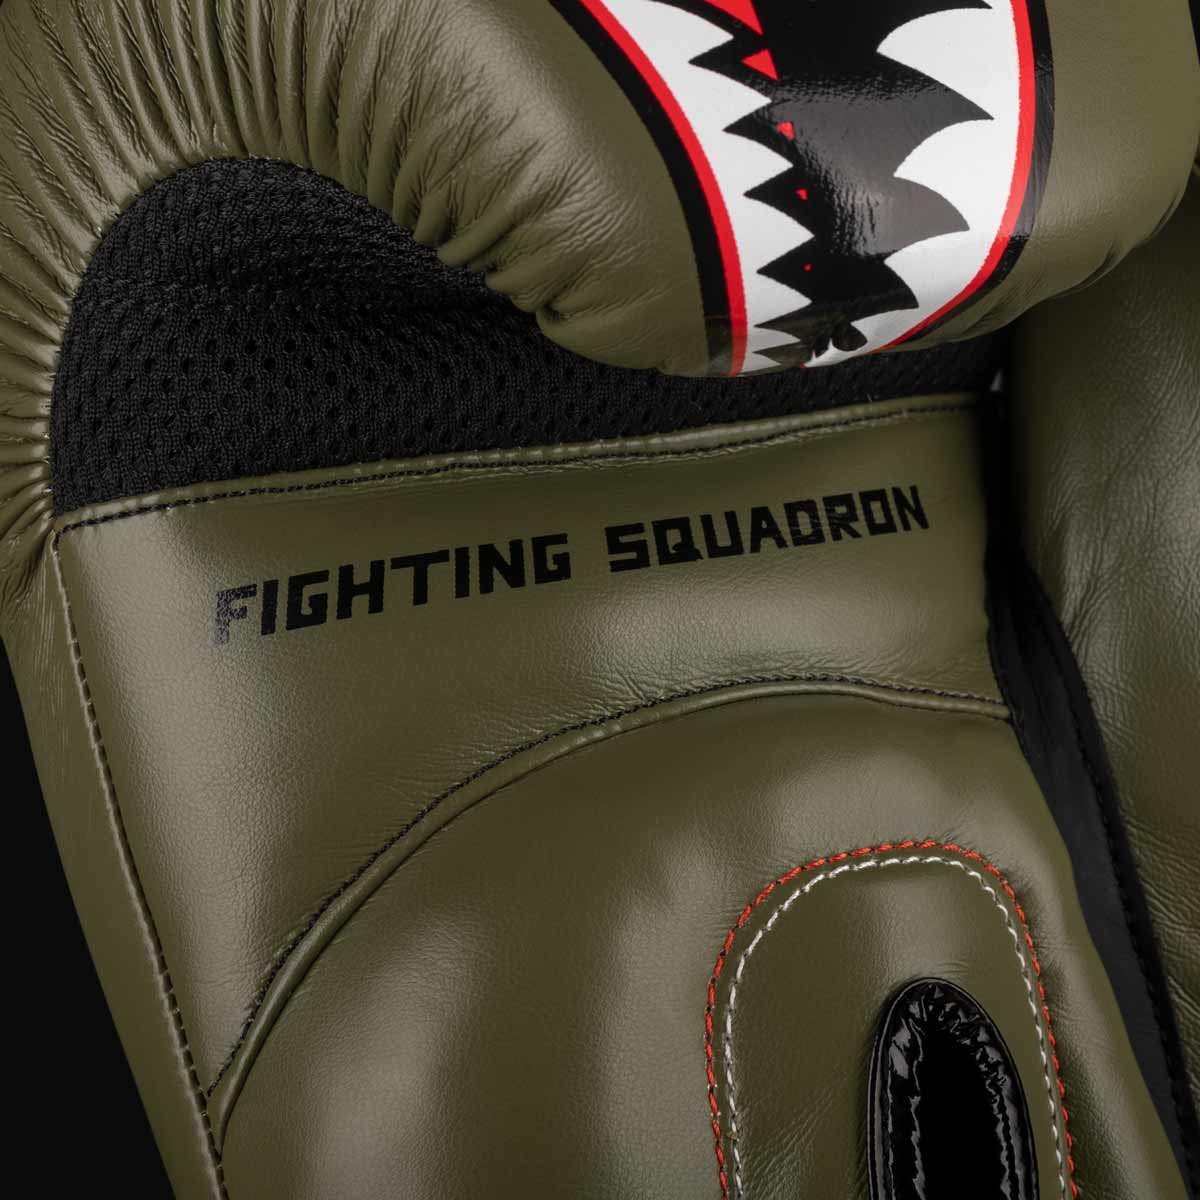 Die Phantom Fight Squad Boxhandschuhe sind mit einem atmungsaktivem MESH Material an der Handinnenfläche ausgestattet für eine hervorragende Belüftung während Training und Sparring.